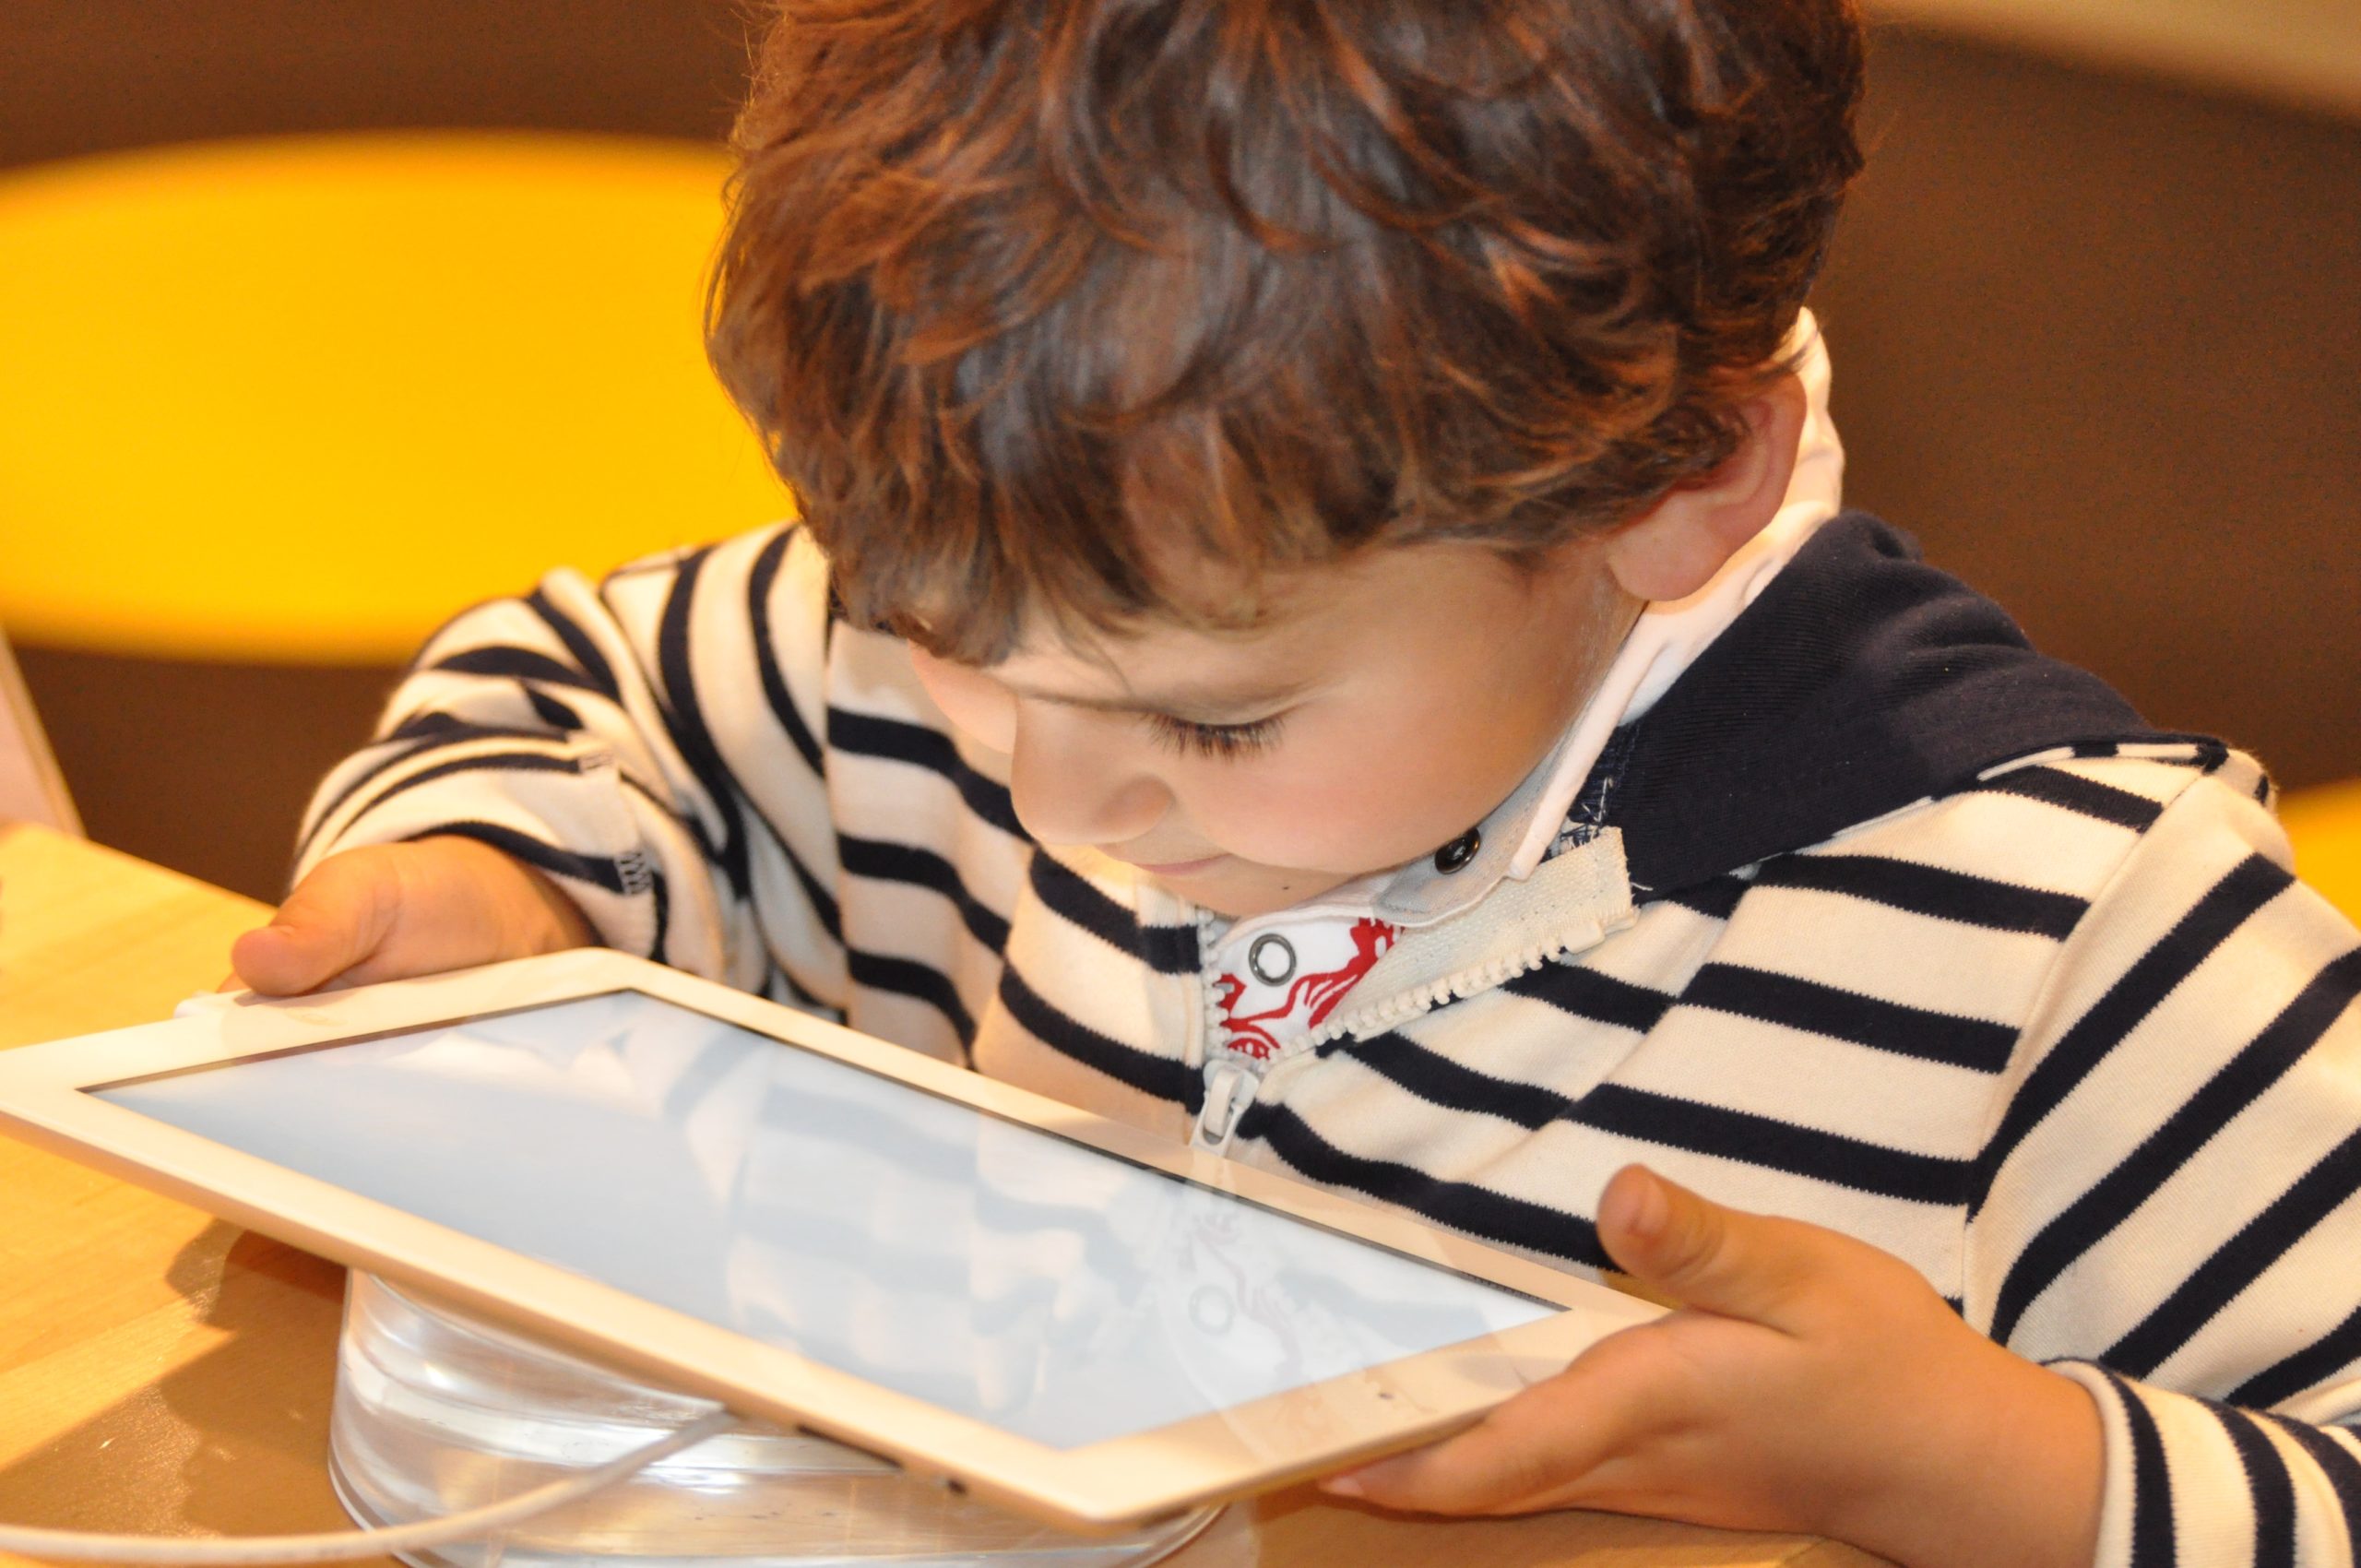 استخدام الأجهزة الإلكترونية لفترات طويلة قد يعيق تطور أدمغة الأطفال